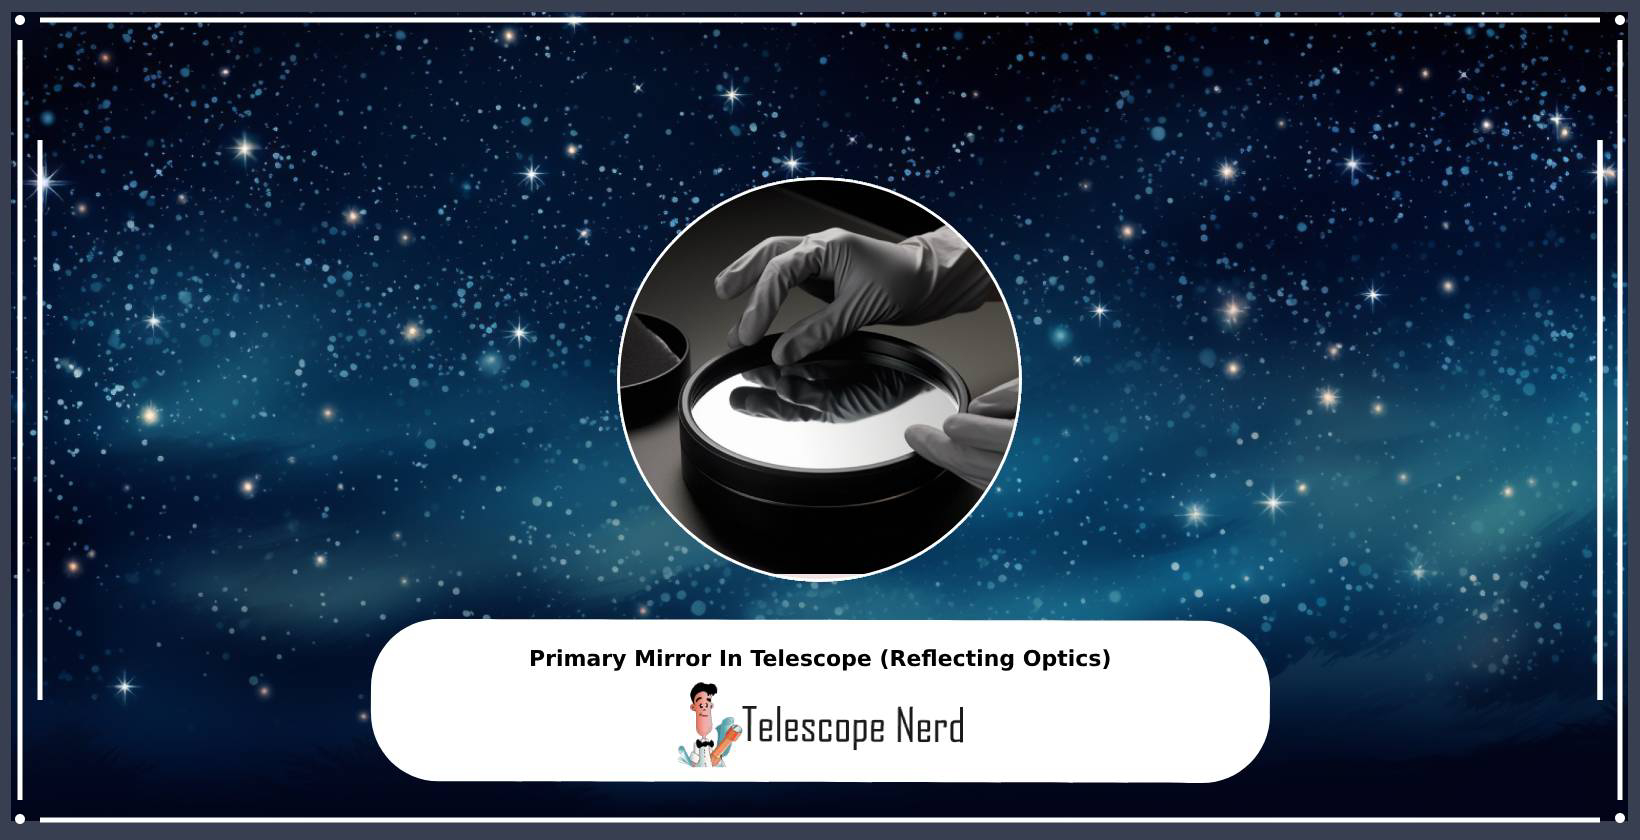 Primary Mirror In Telescope (Reflecting Optics)